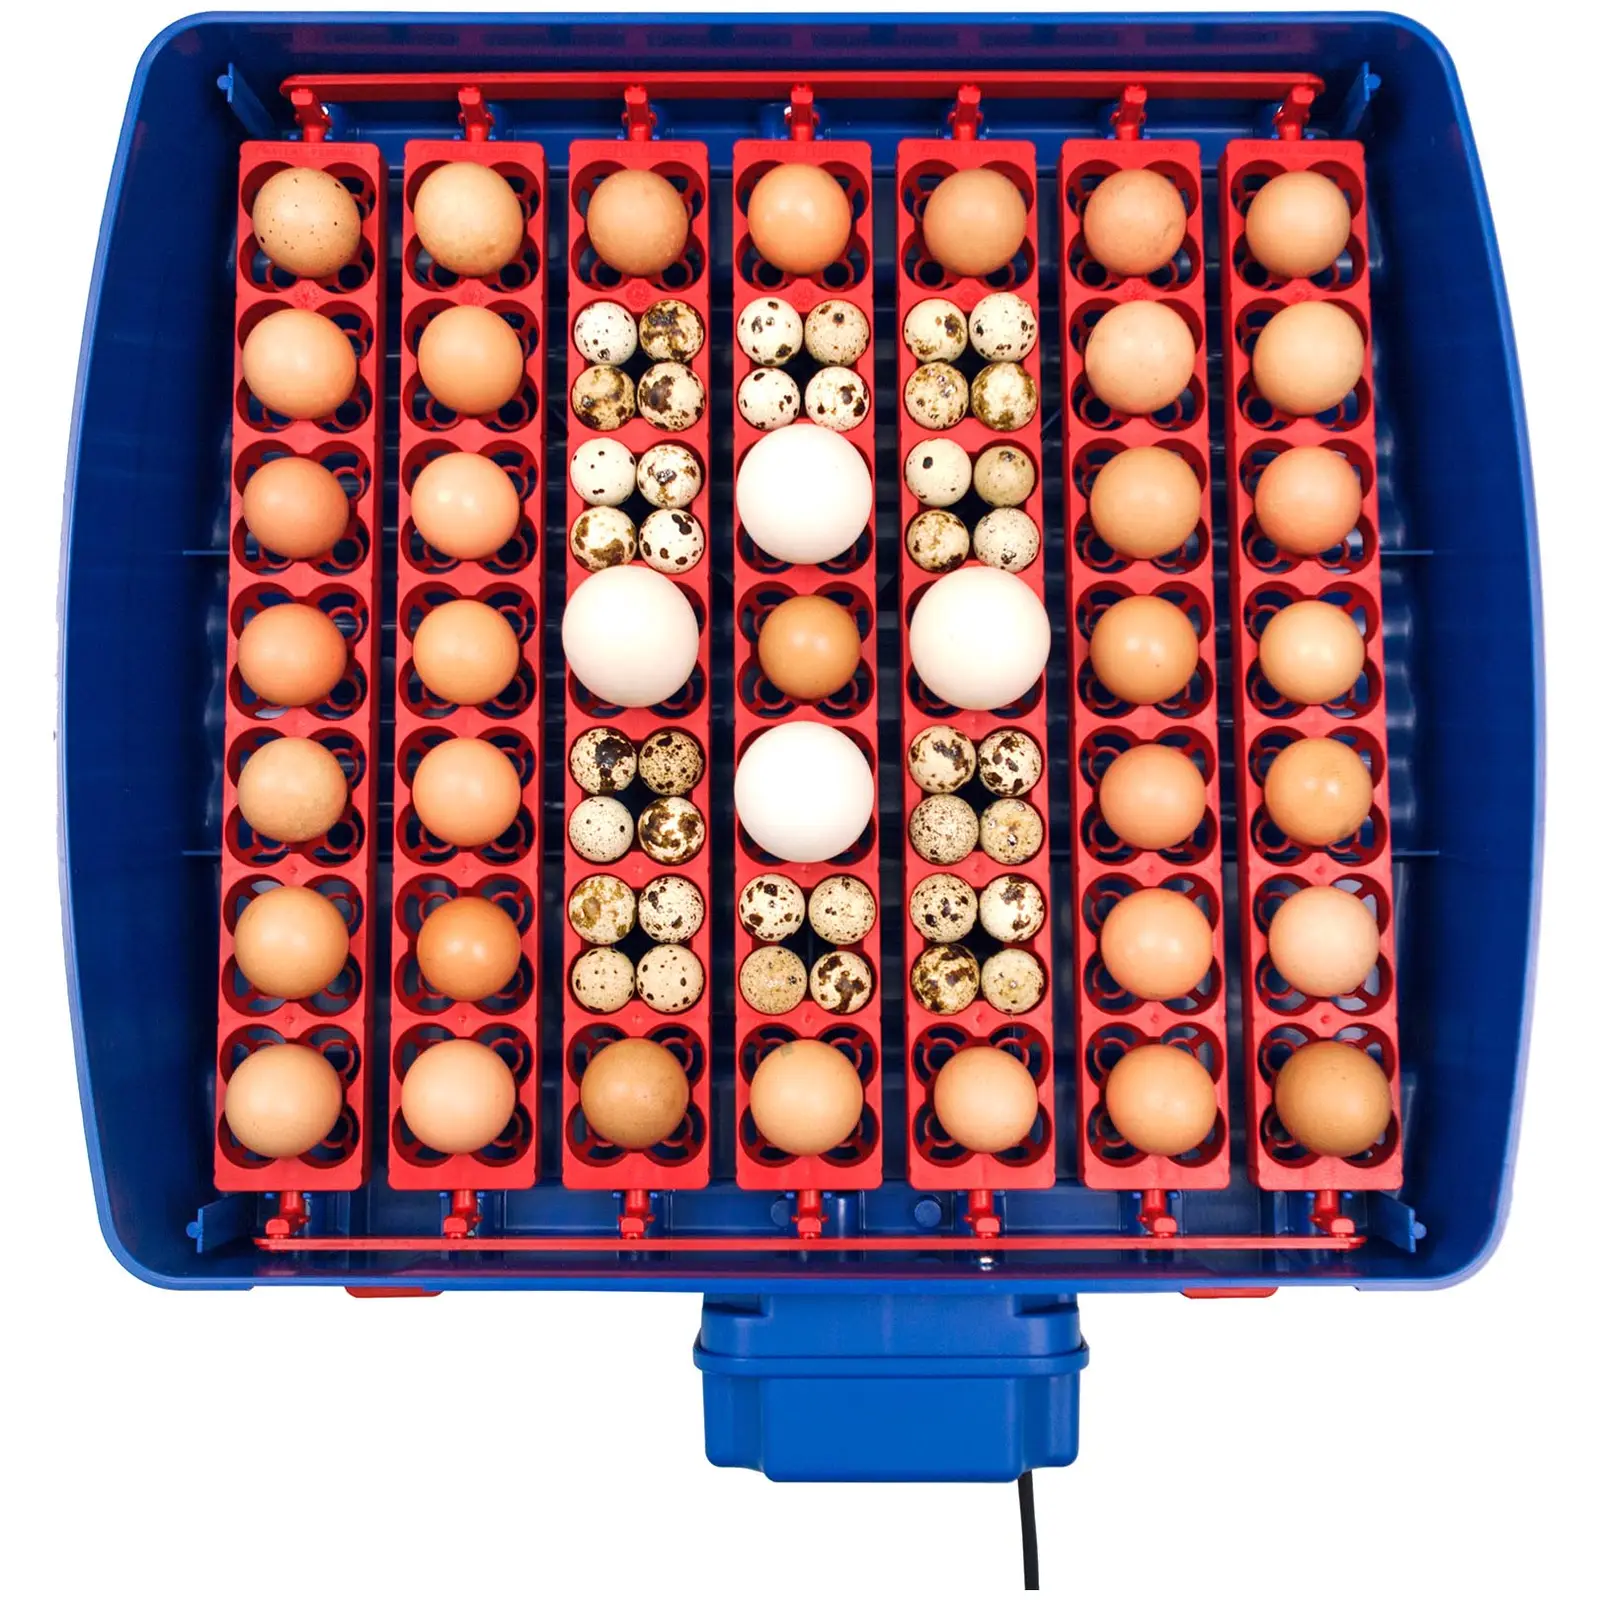 Brutapparat - 49 Eier - inklusive Bewässerungssystem - vollautomatisch - antimikrobieller Biomaster-Schutz